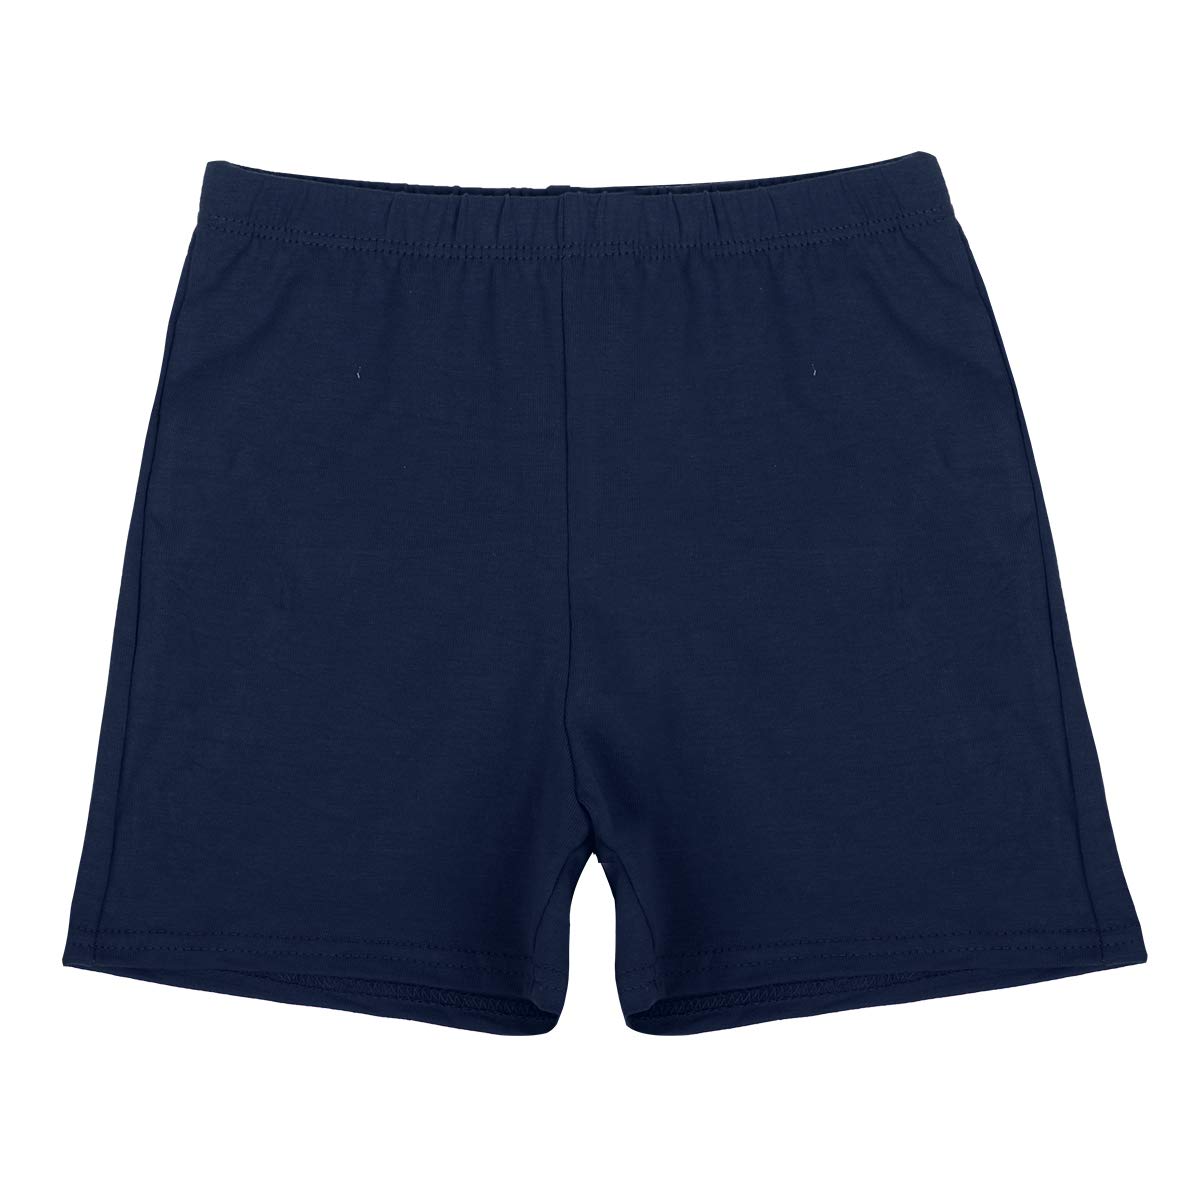 Unisex Navy PE Shorts, Elasticated Waist, 4-5 Y